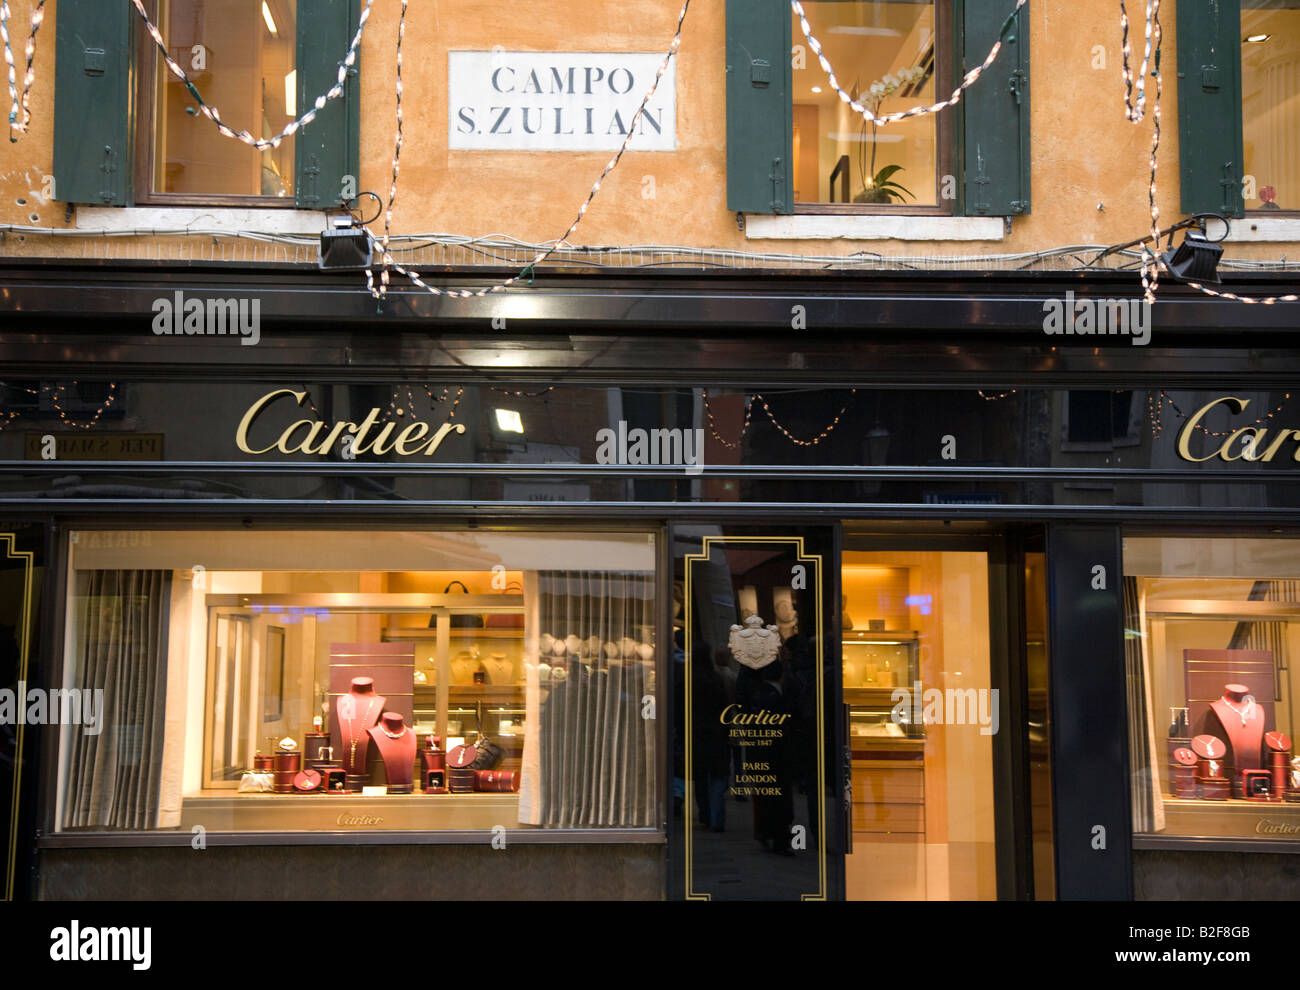 Cartier jewellery shop Venice Italy 